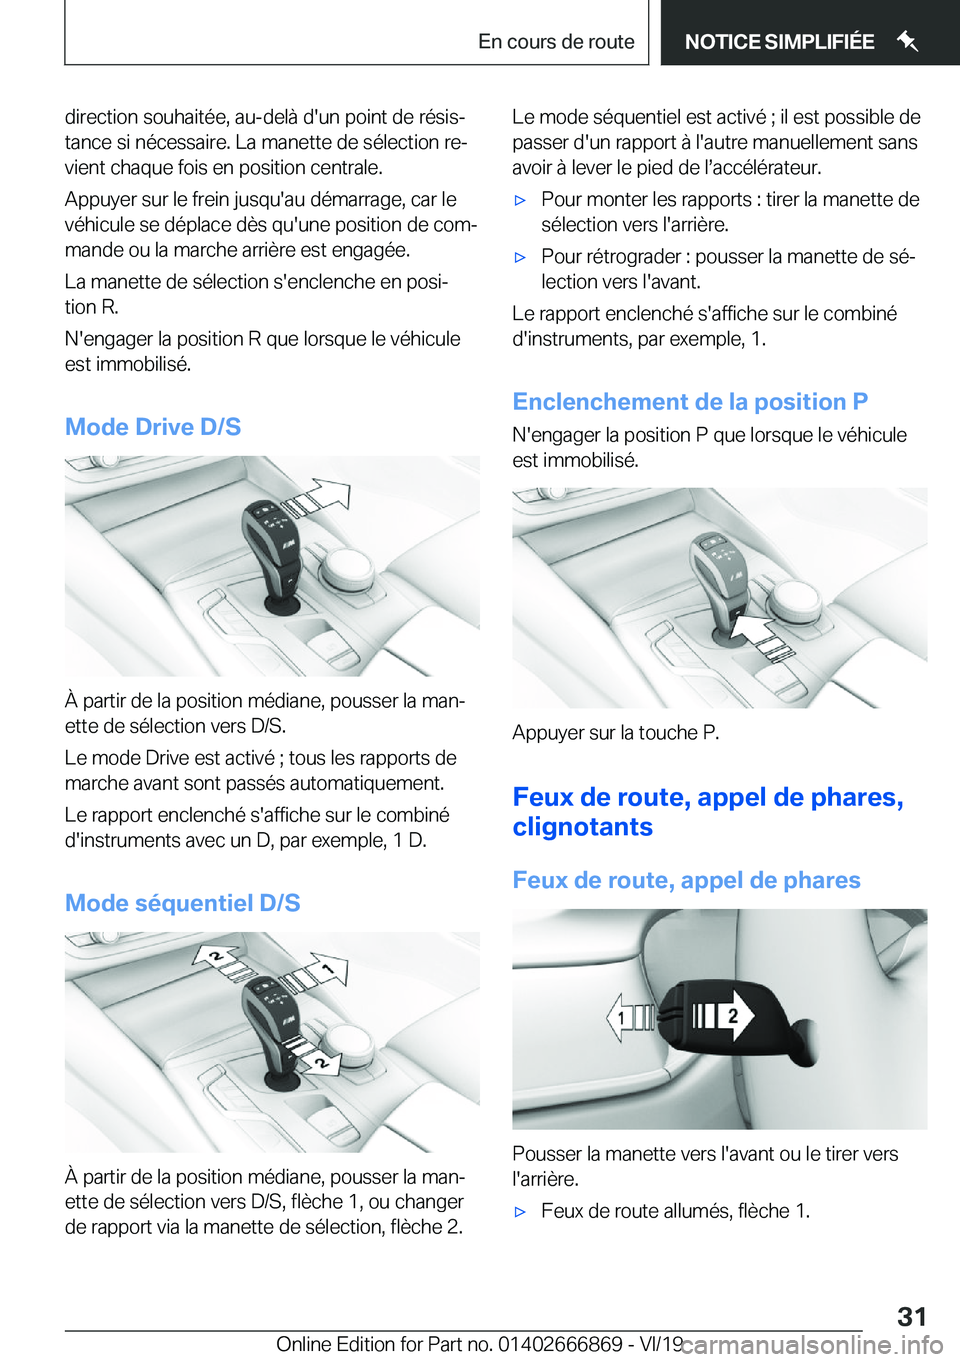 BMW X4 M 2020  Notices Demploi (in French) �d�i�r�e�c�t�i�o�n��s�o�u�h�a�i�t�é�e�,��a�u�-�d�e�l�